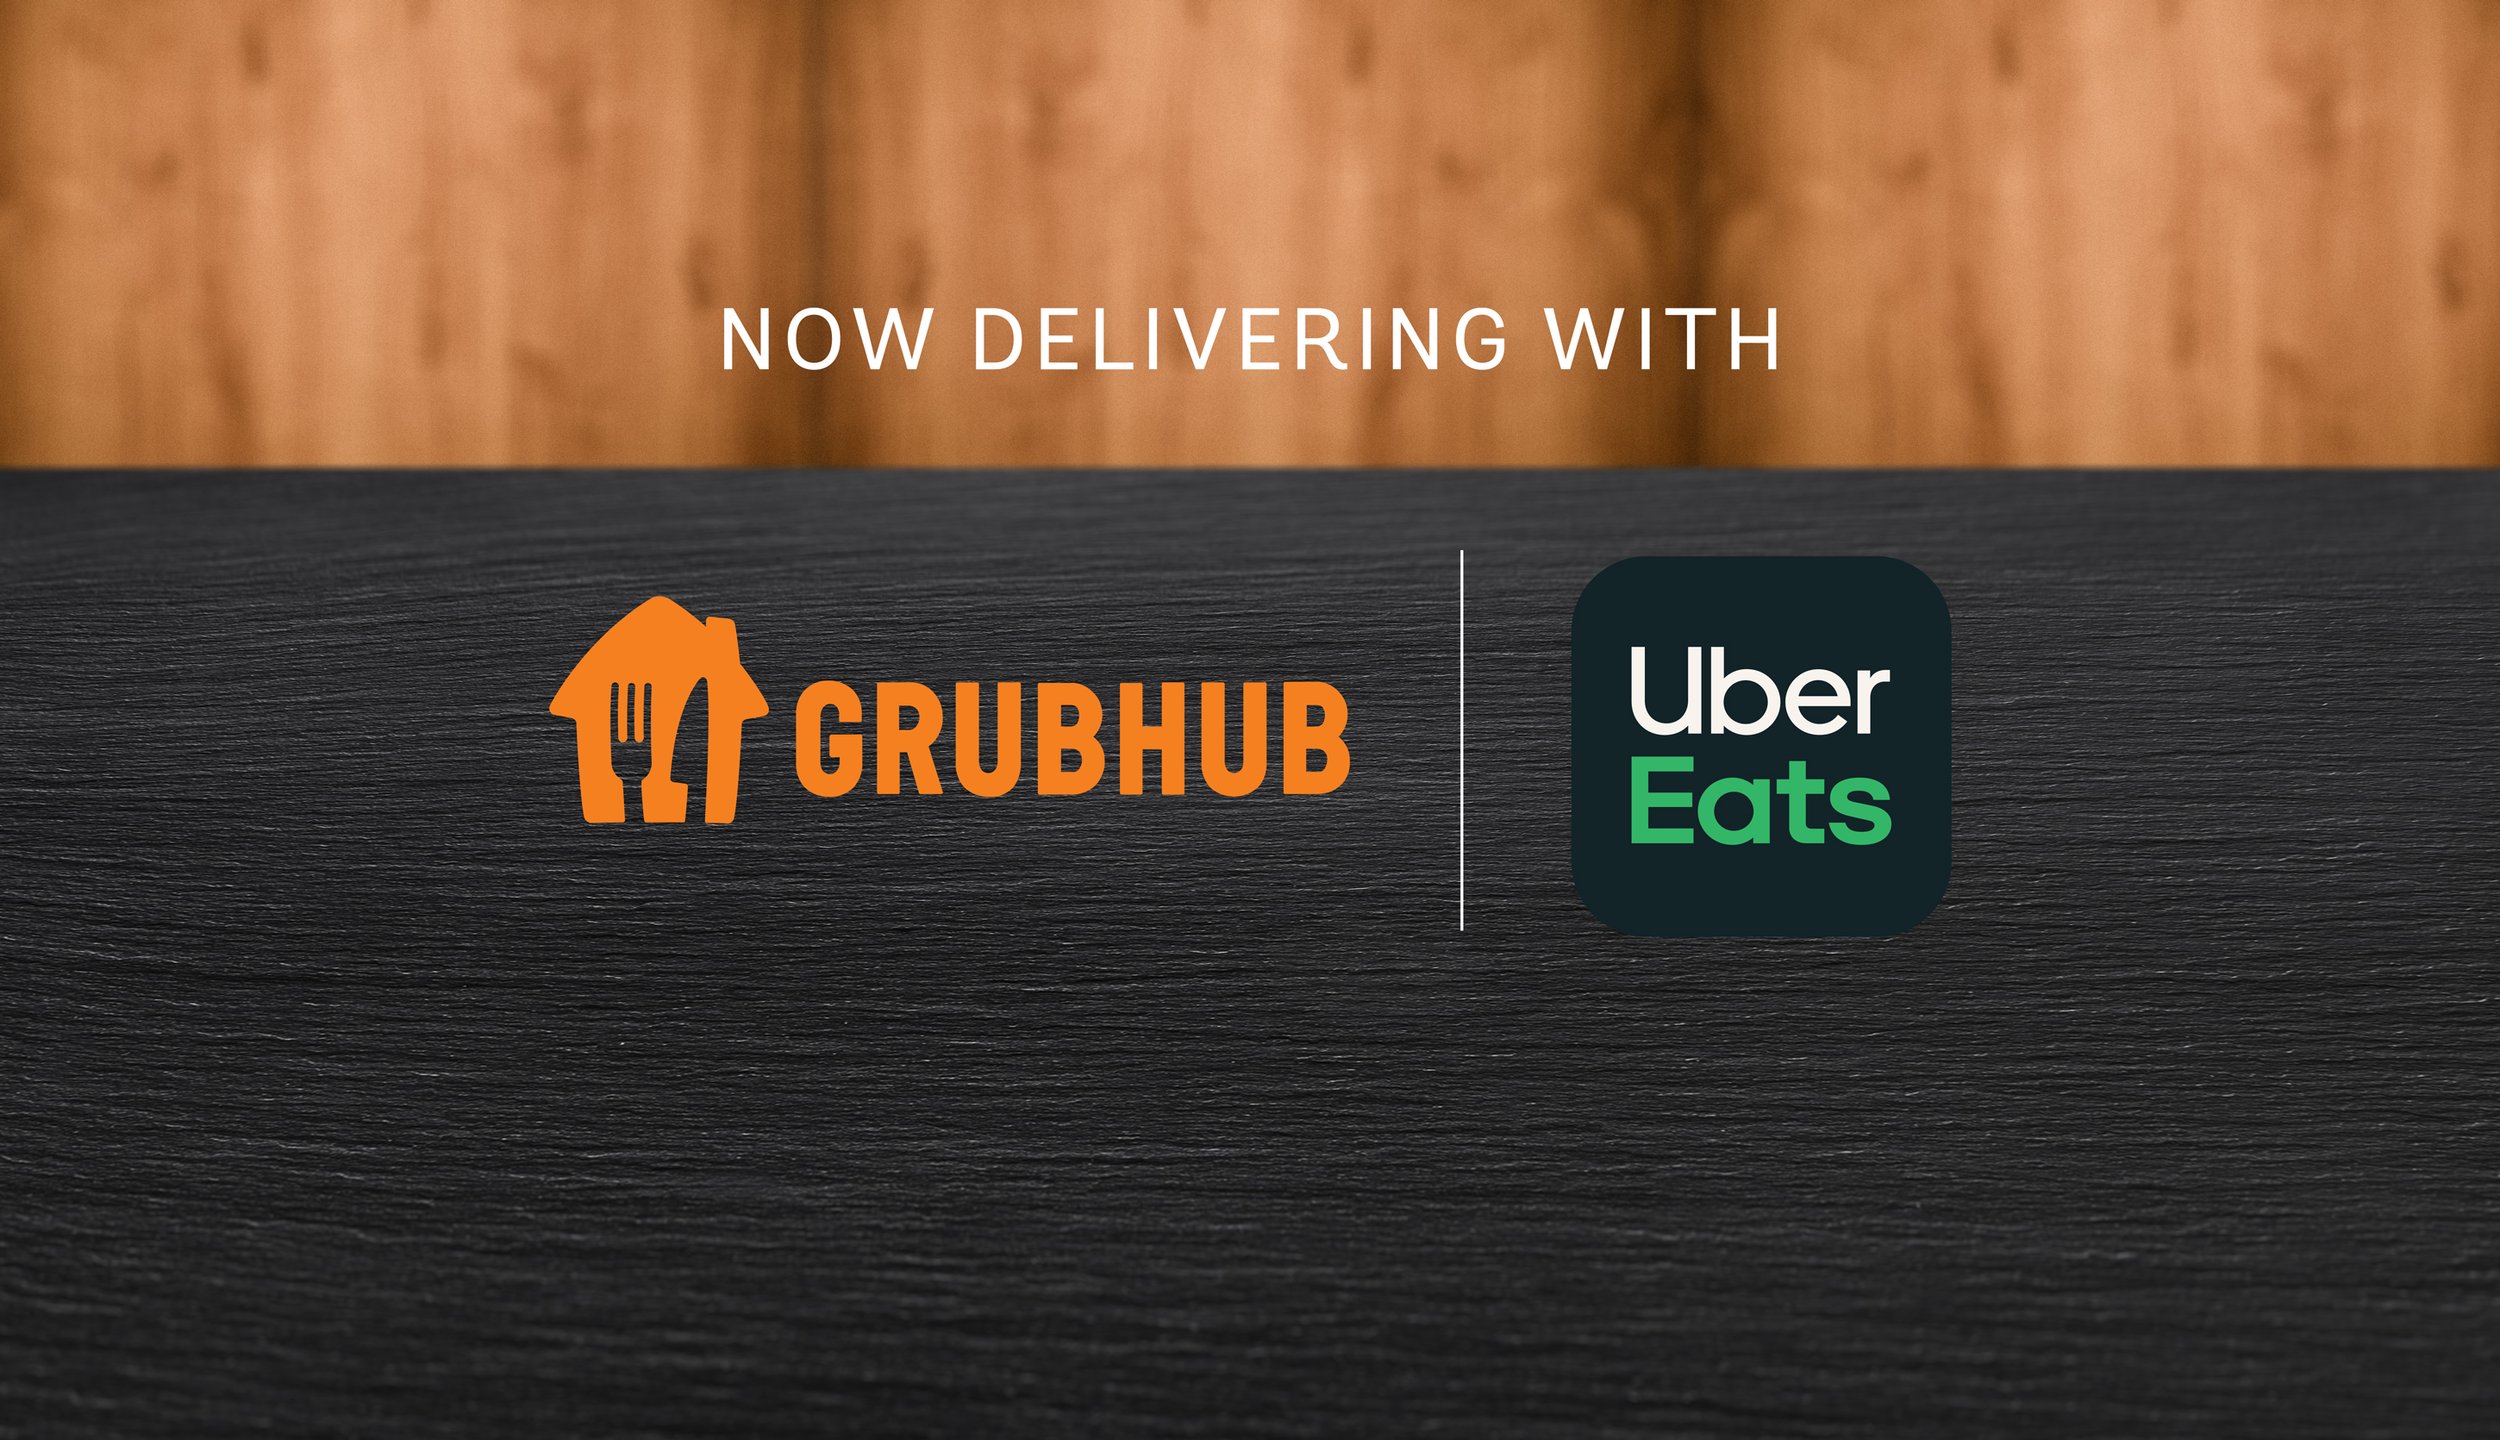 Uber-Eats-Delivery-Slide.jpg